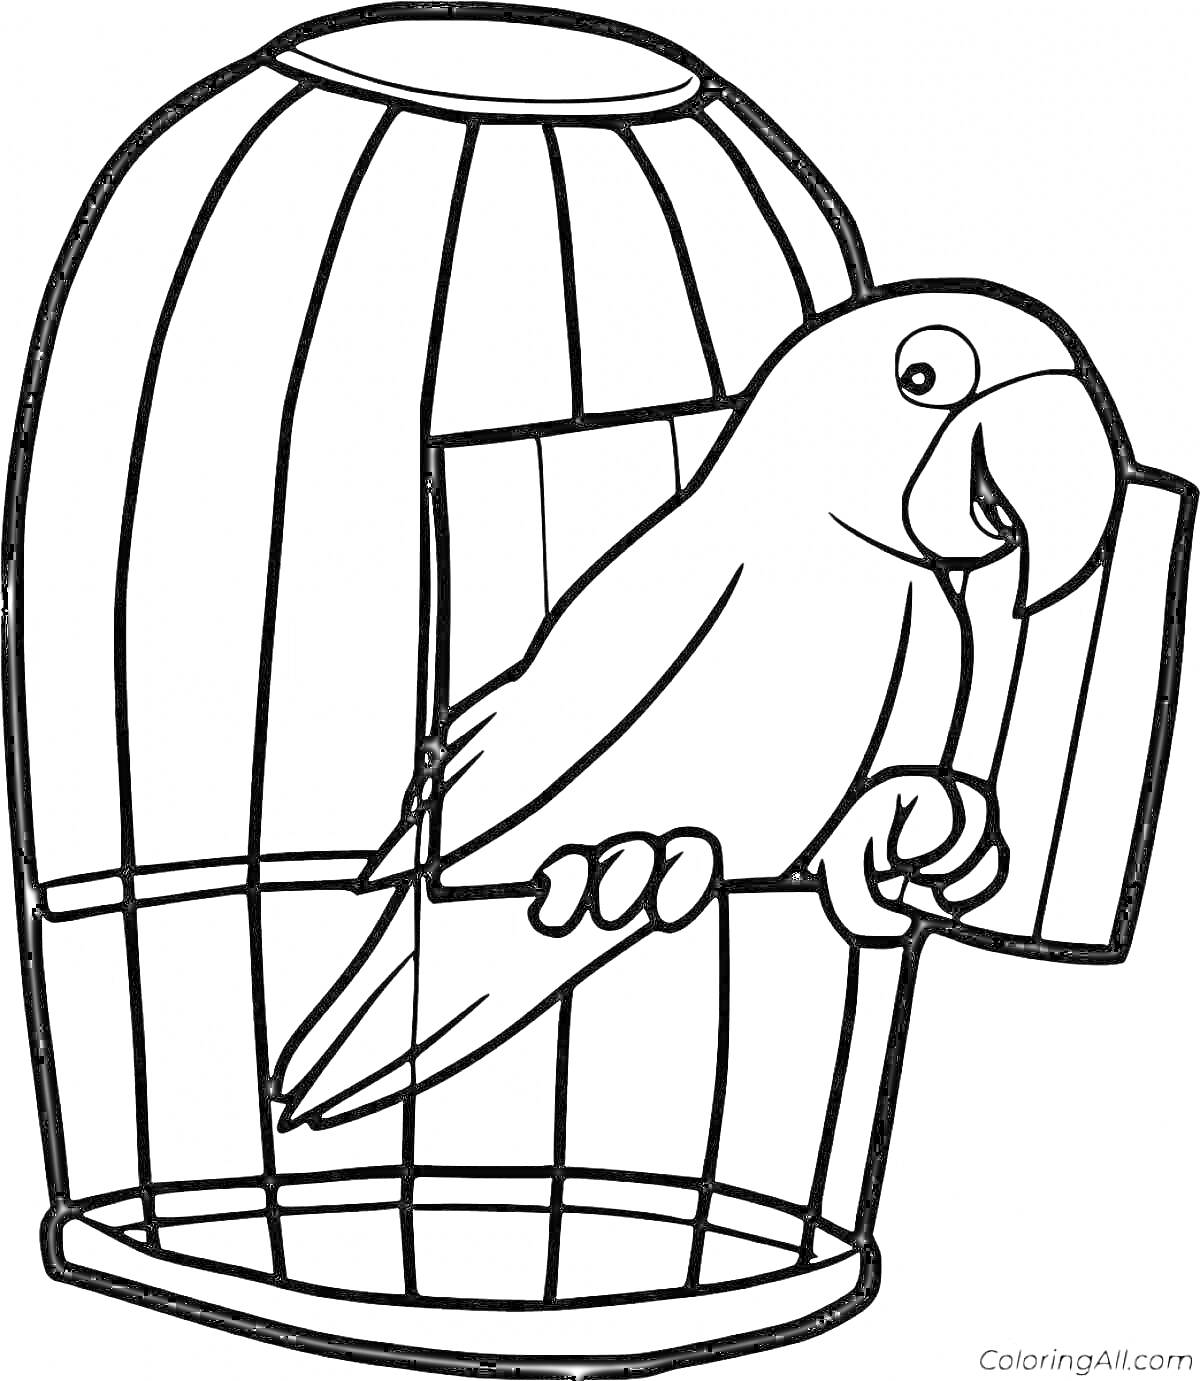 Раскраска Попугай в клетке на жердочке